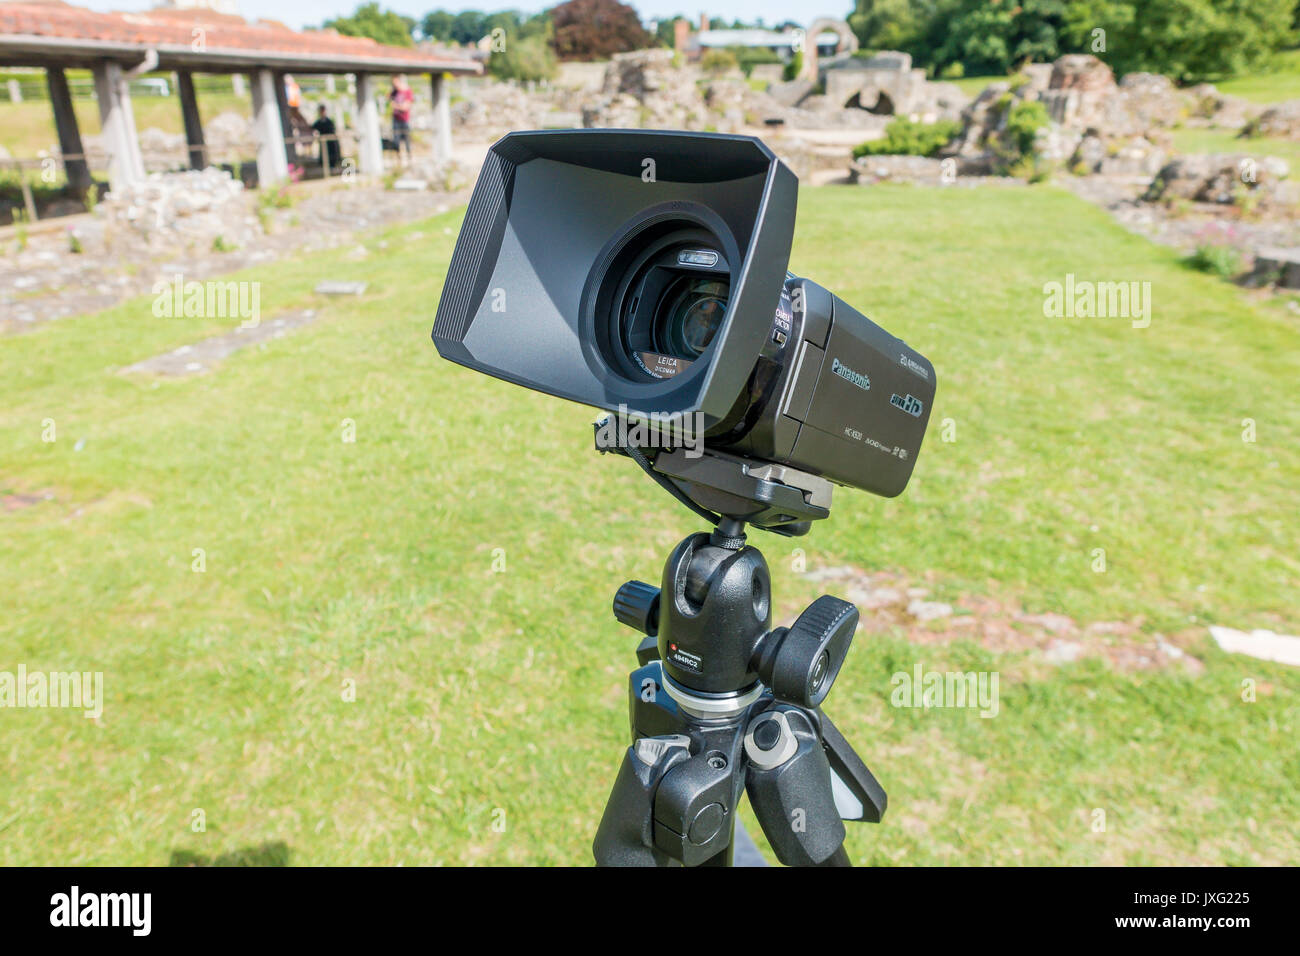 Mennon,,capucha para lente gran angular,proteger la lente,de,reflejos,soleado,lente Leica,cámara,vídeo Panasonic HC-X920 Foto de stock